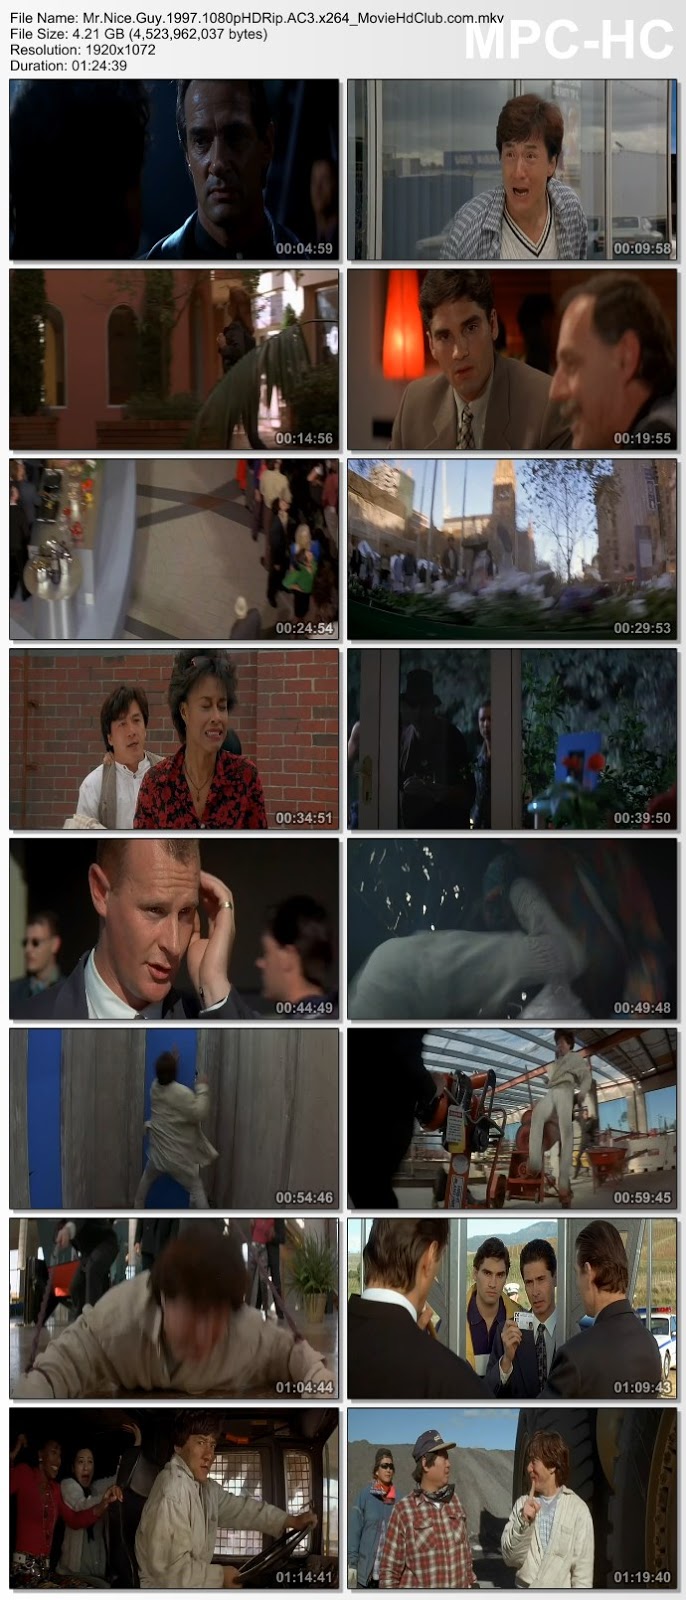 [Mini-HD] Mr. Nice Guy (1997) - ใหญ่ทับใหญ่ [720p|1080p][เสียง:ไทย 2.0][ซับ:-][.MKV] NG_MovieHdClub_SS